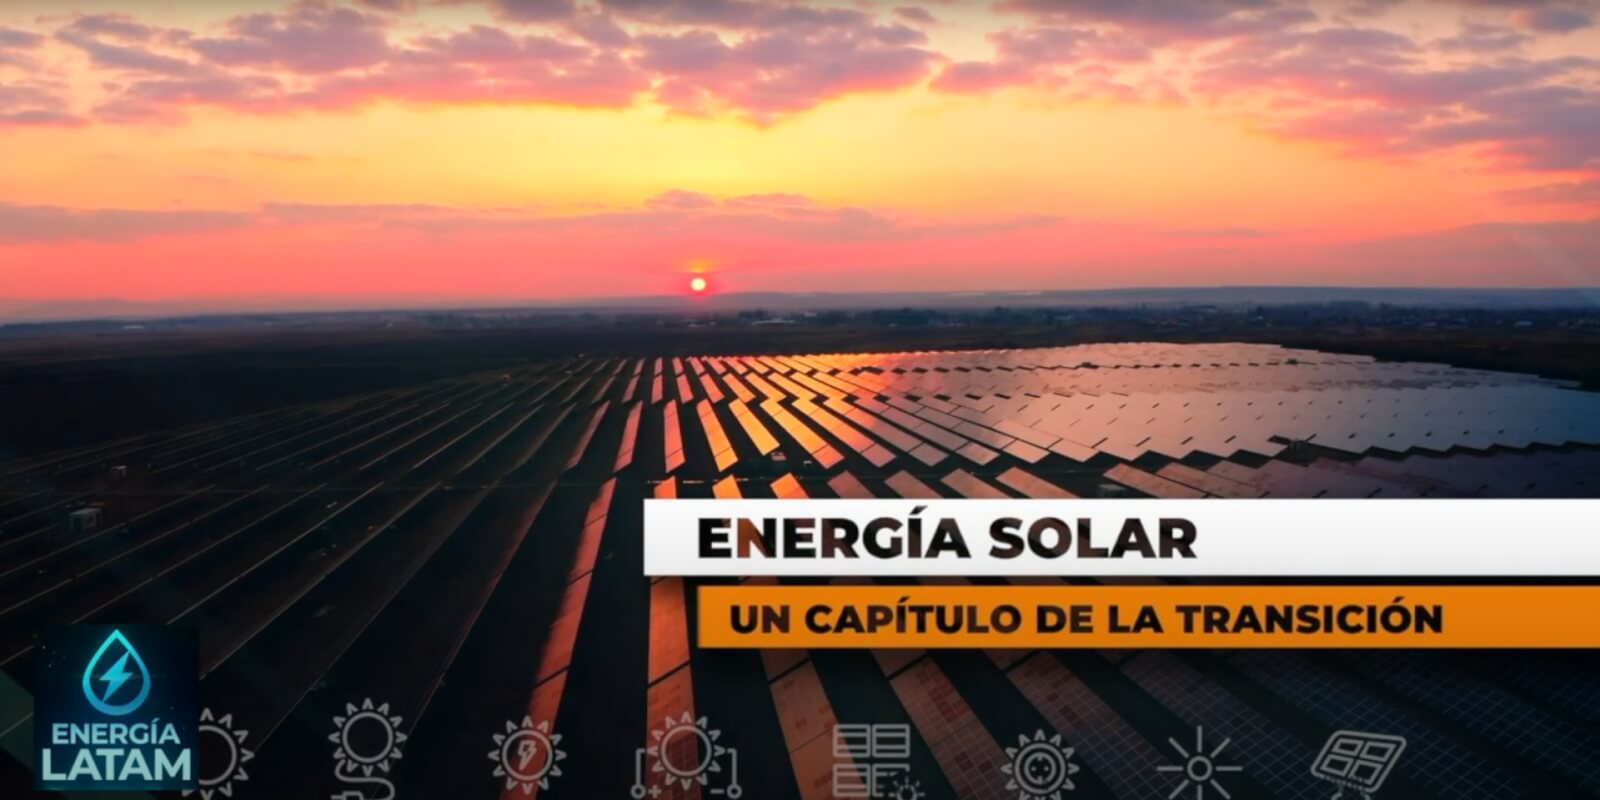 ENERGÍA SOLAR, UN CAPÍTULO DE LA TRANSICIÓN